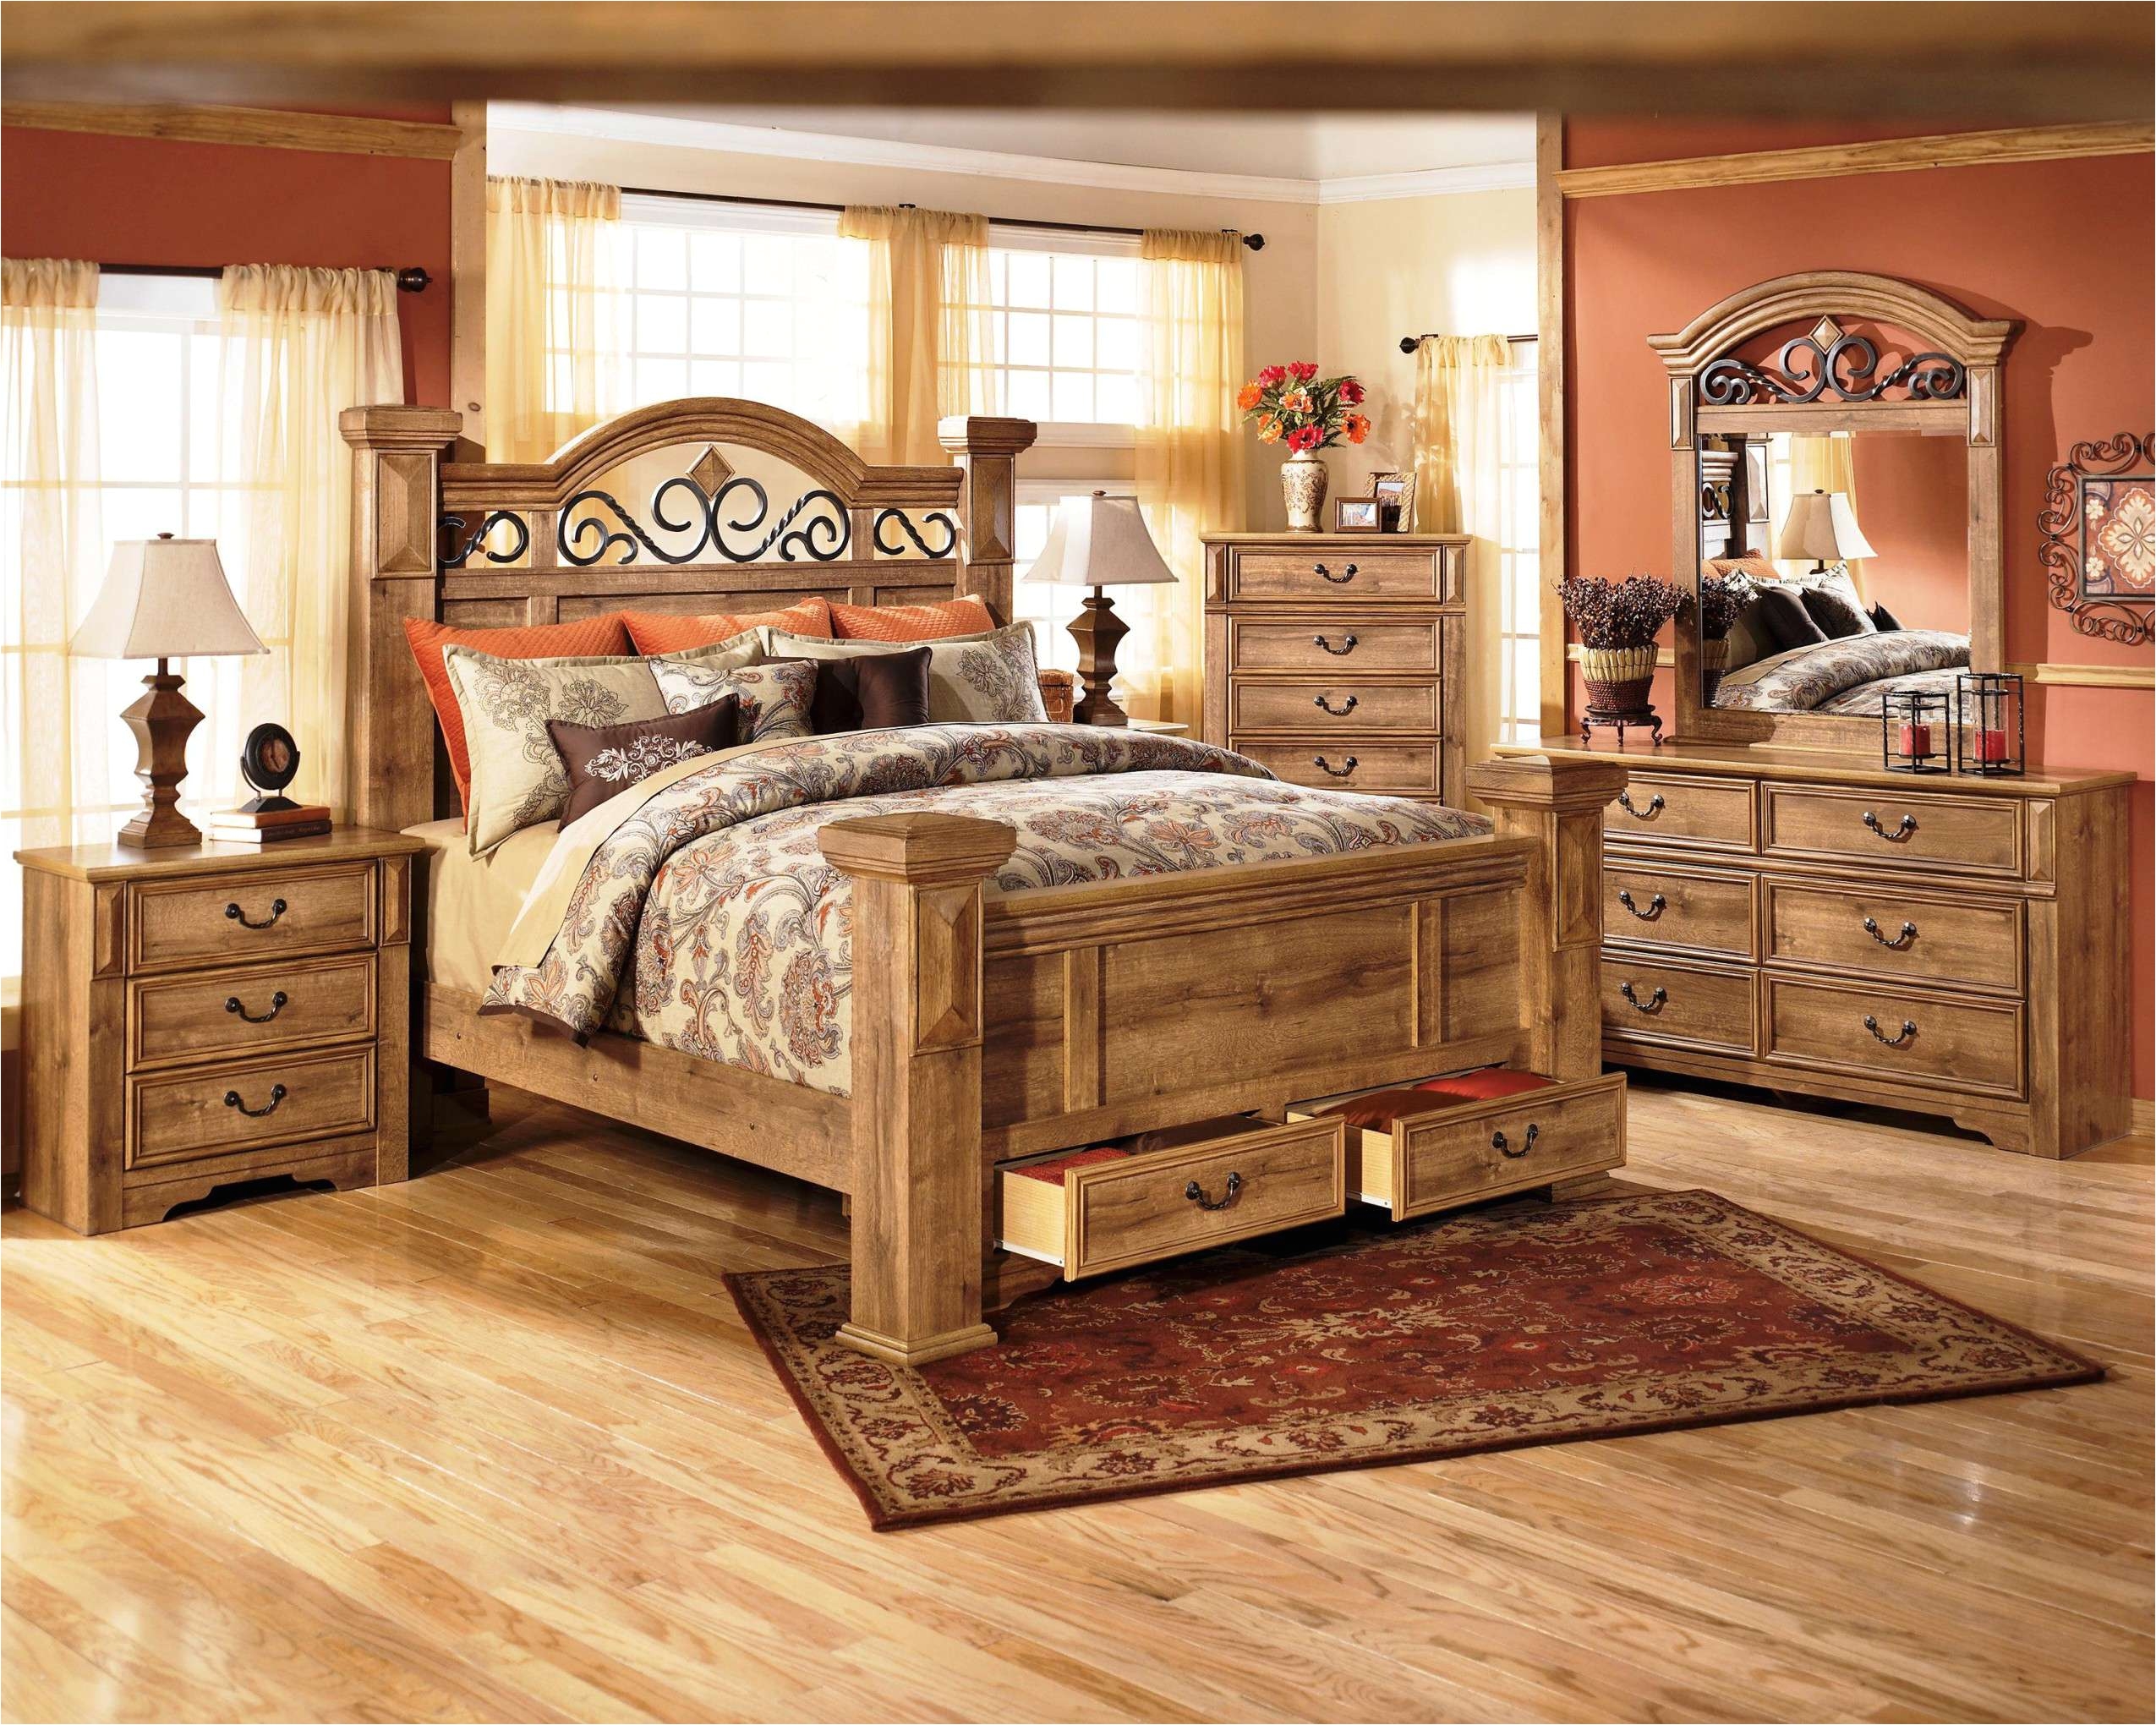 ashley furniture bedroom sets images beautiful sanibel bedroom set ashley wonderful sanibel bedroom set 1 ashley